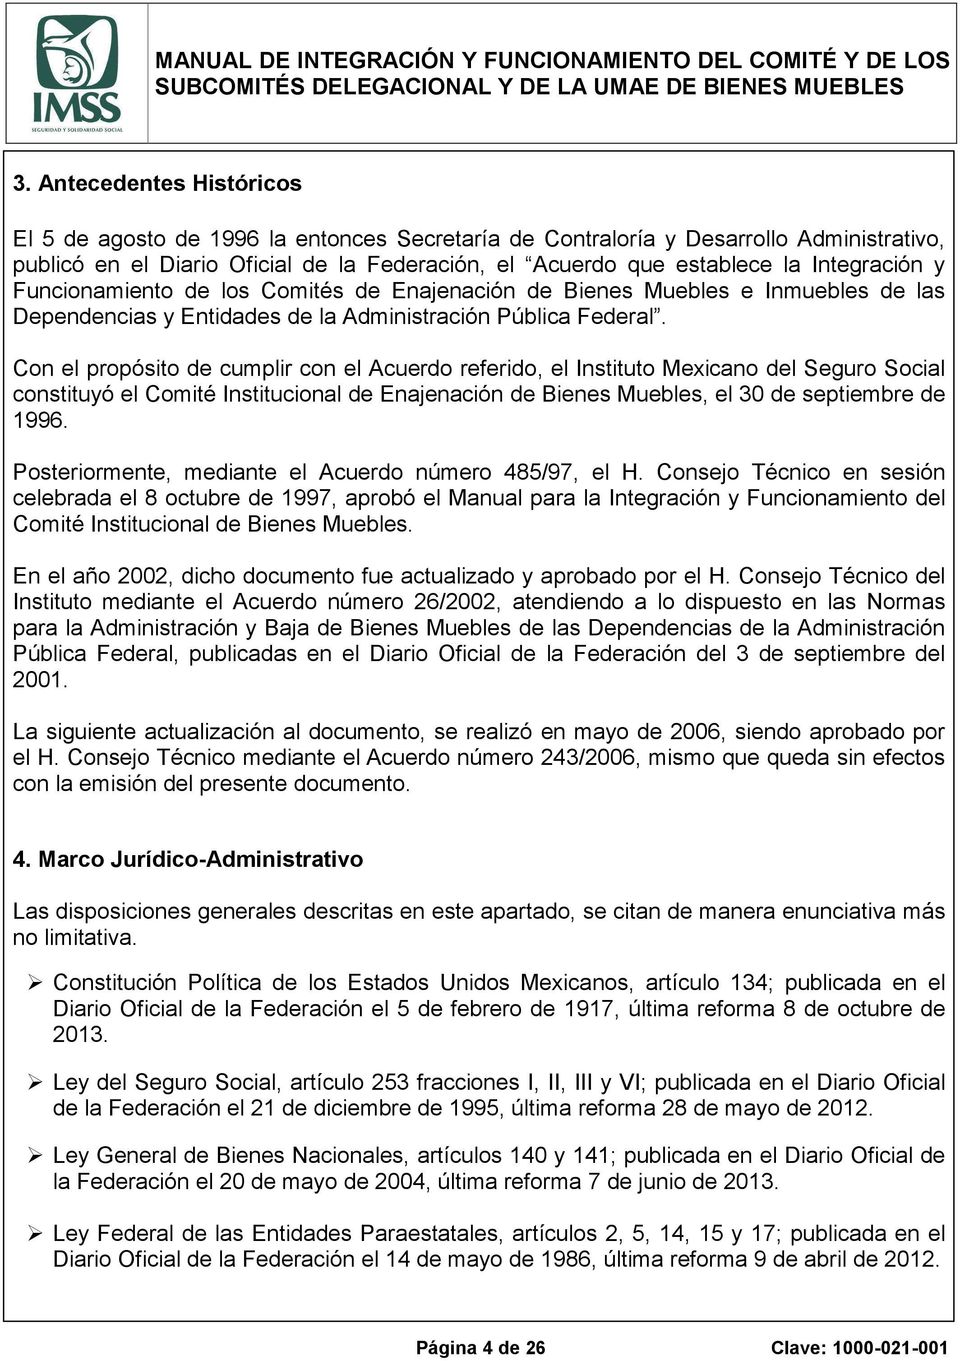 Con el propósito de cumplir con el Acuerdo referido, el Instituto Mexicano del Seguro Social constituyó el Comité Institucional de Enajenación de Bienes Muebles, el 30 de septiembre de 1996.